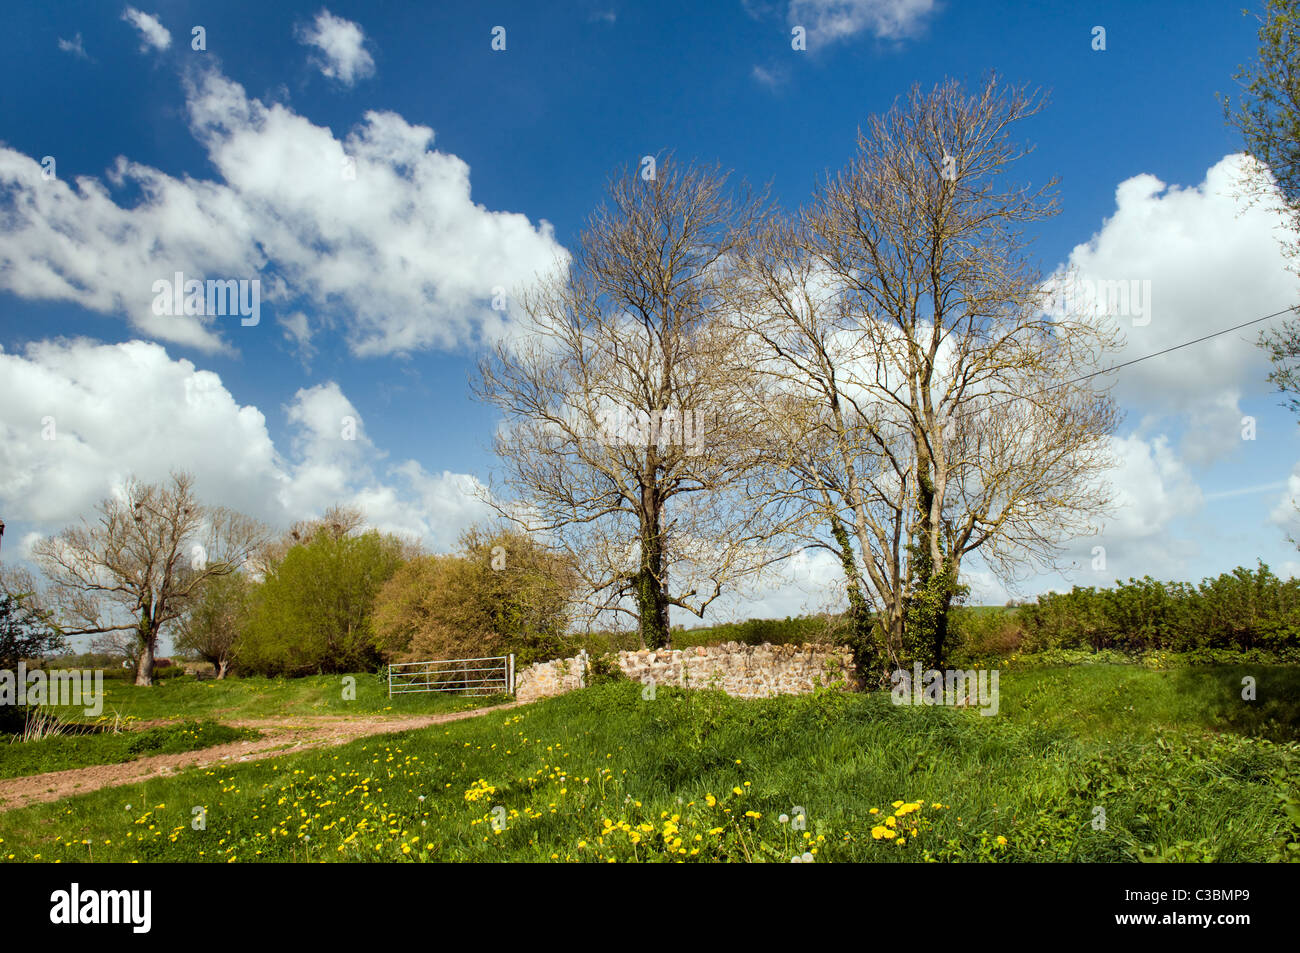 Jolie scène de campagne prises près de Fenny château, Somerset, Angleterre Royaume-uni le jour de printemps ensoleillée Banque D'Images